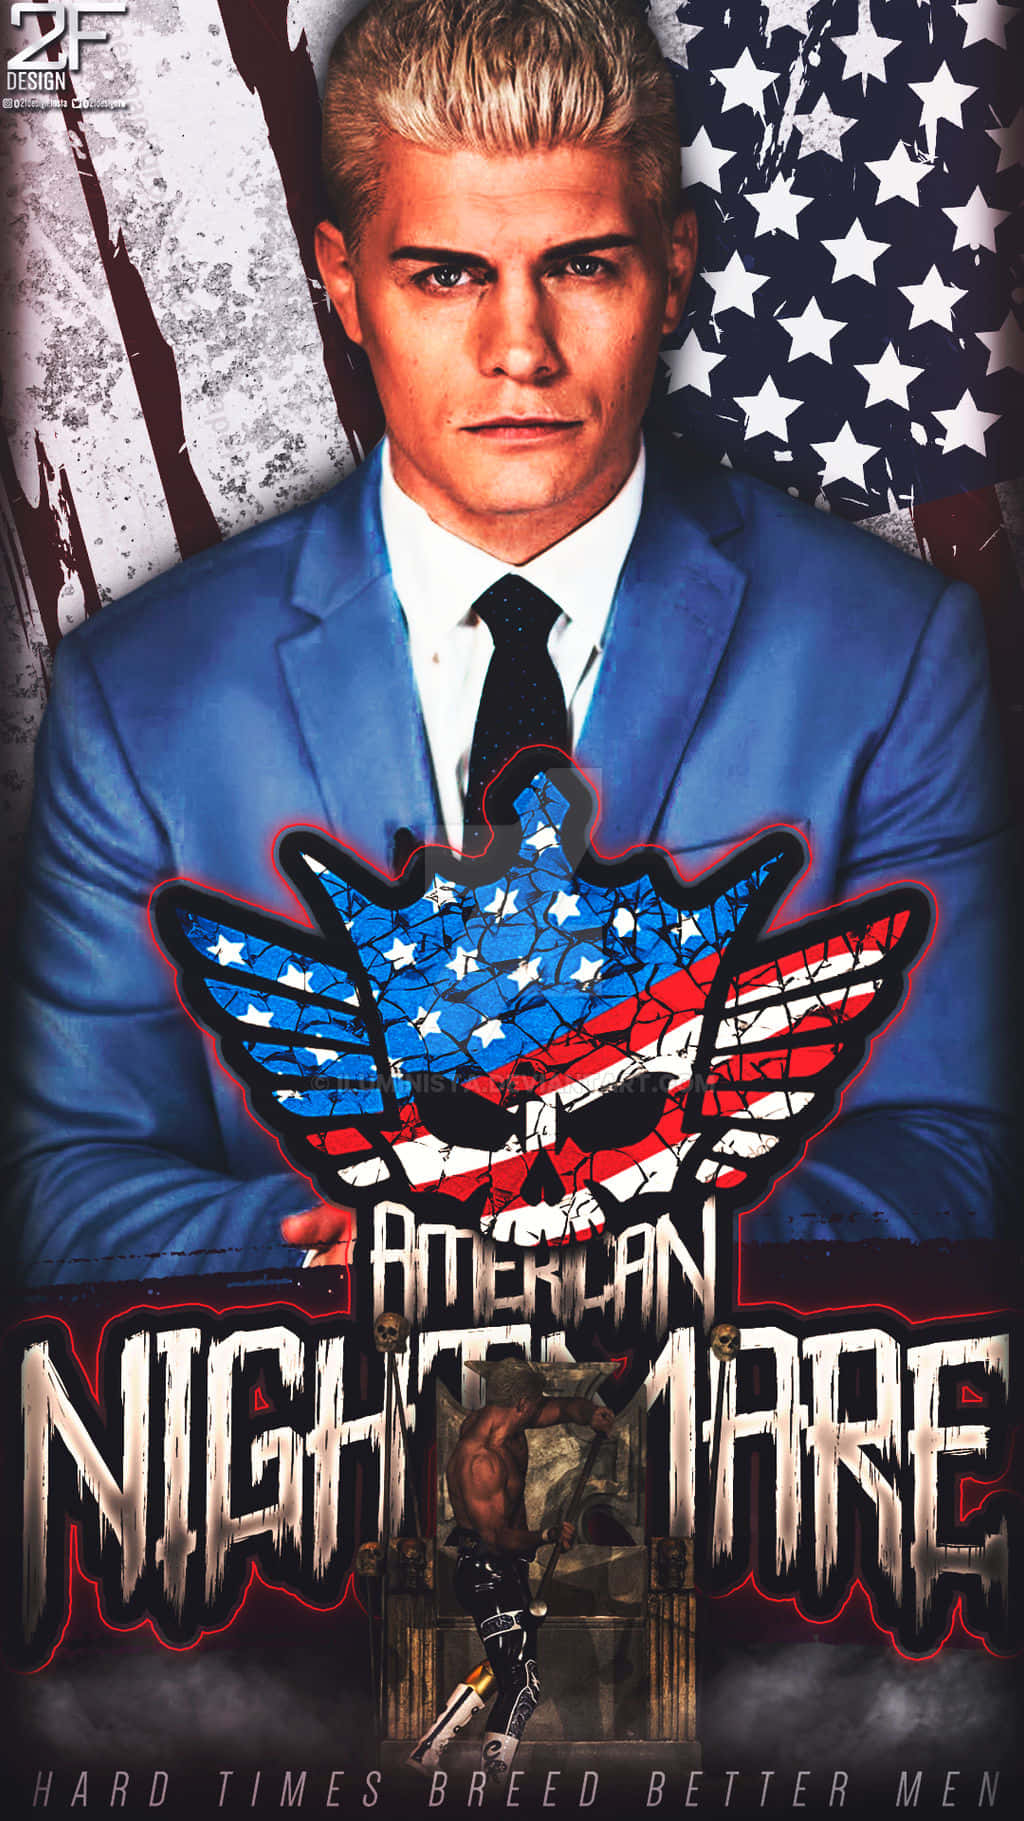 Cody Rhodes, Amerikansk Mardröm Wallpaper